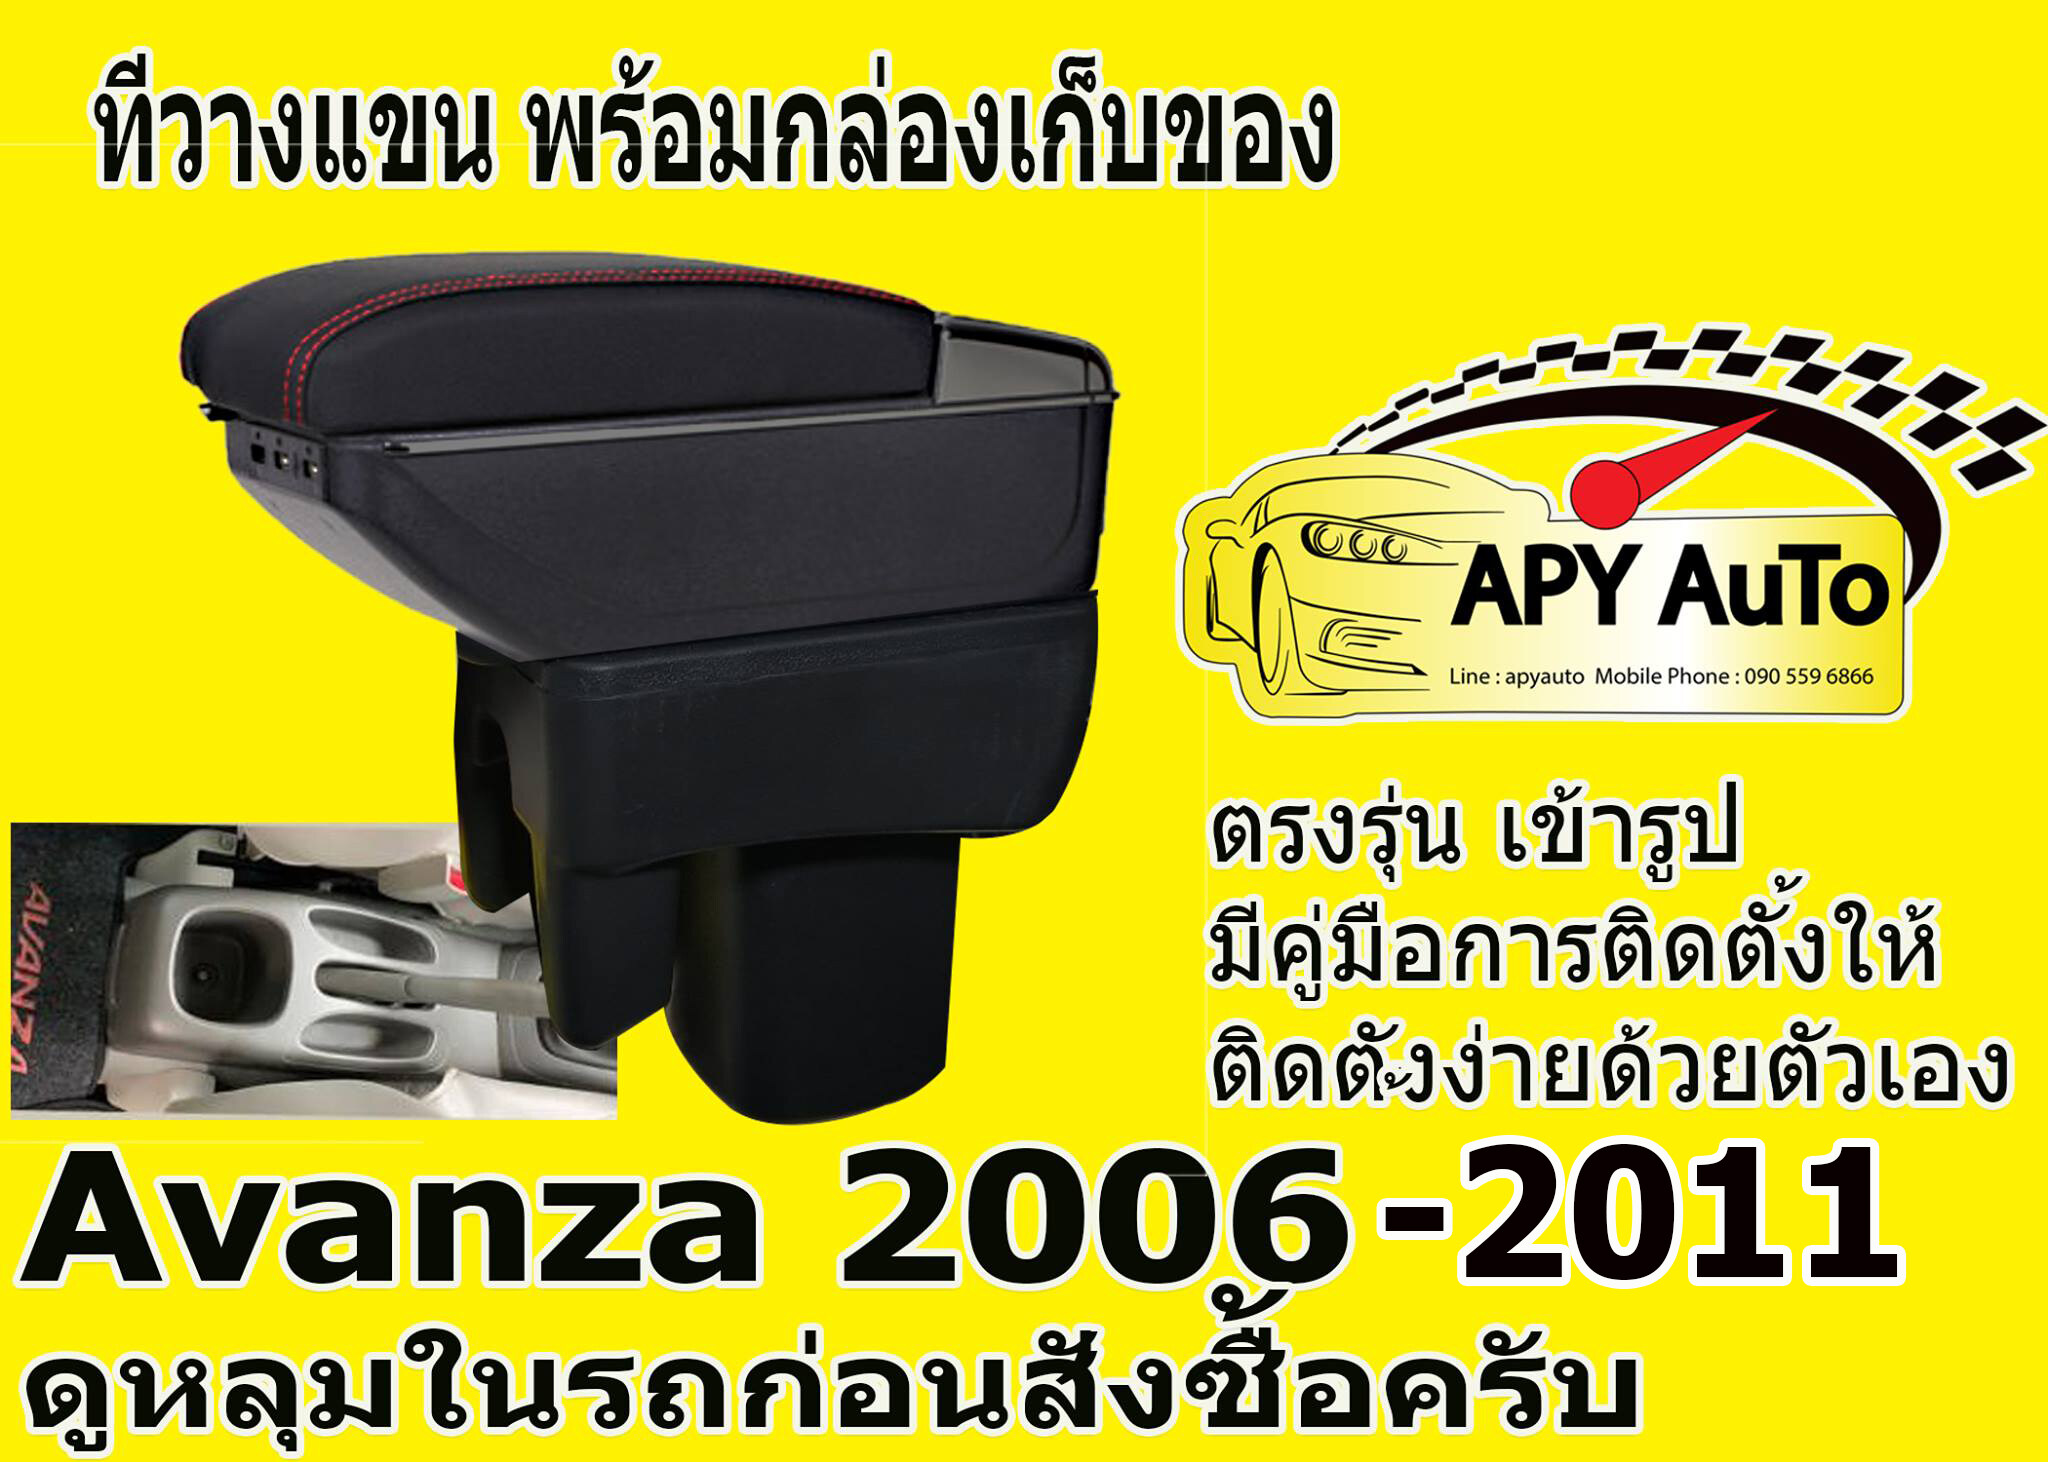 ที่วางแขน Avanza ทุกปี ดูหลุมในรถก่อนสั่งซื้อครับ เก็บของได้ มี USB แบบ ไฟ LED และแบบเก๊ะ 2 ชั้น